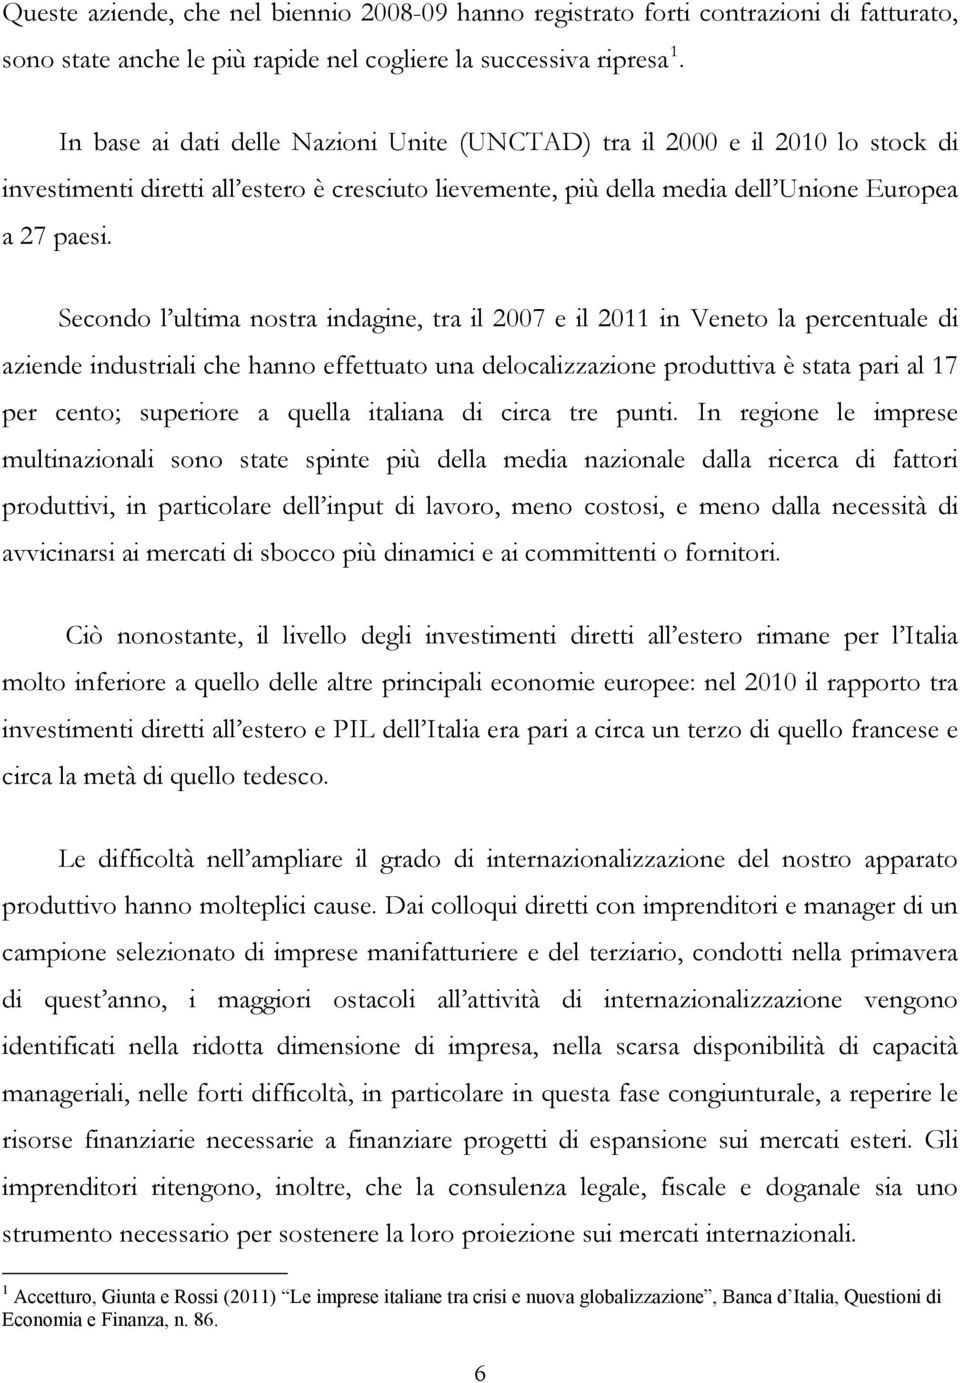 Secondo l ultima nostra indagine, tra il 2007 e il 2011 in Veneto la percentuale di aziende industriali che hanno effettuato una delocalizzazione produttiva è stata pari al 17 per cento; superiore a